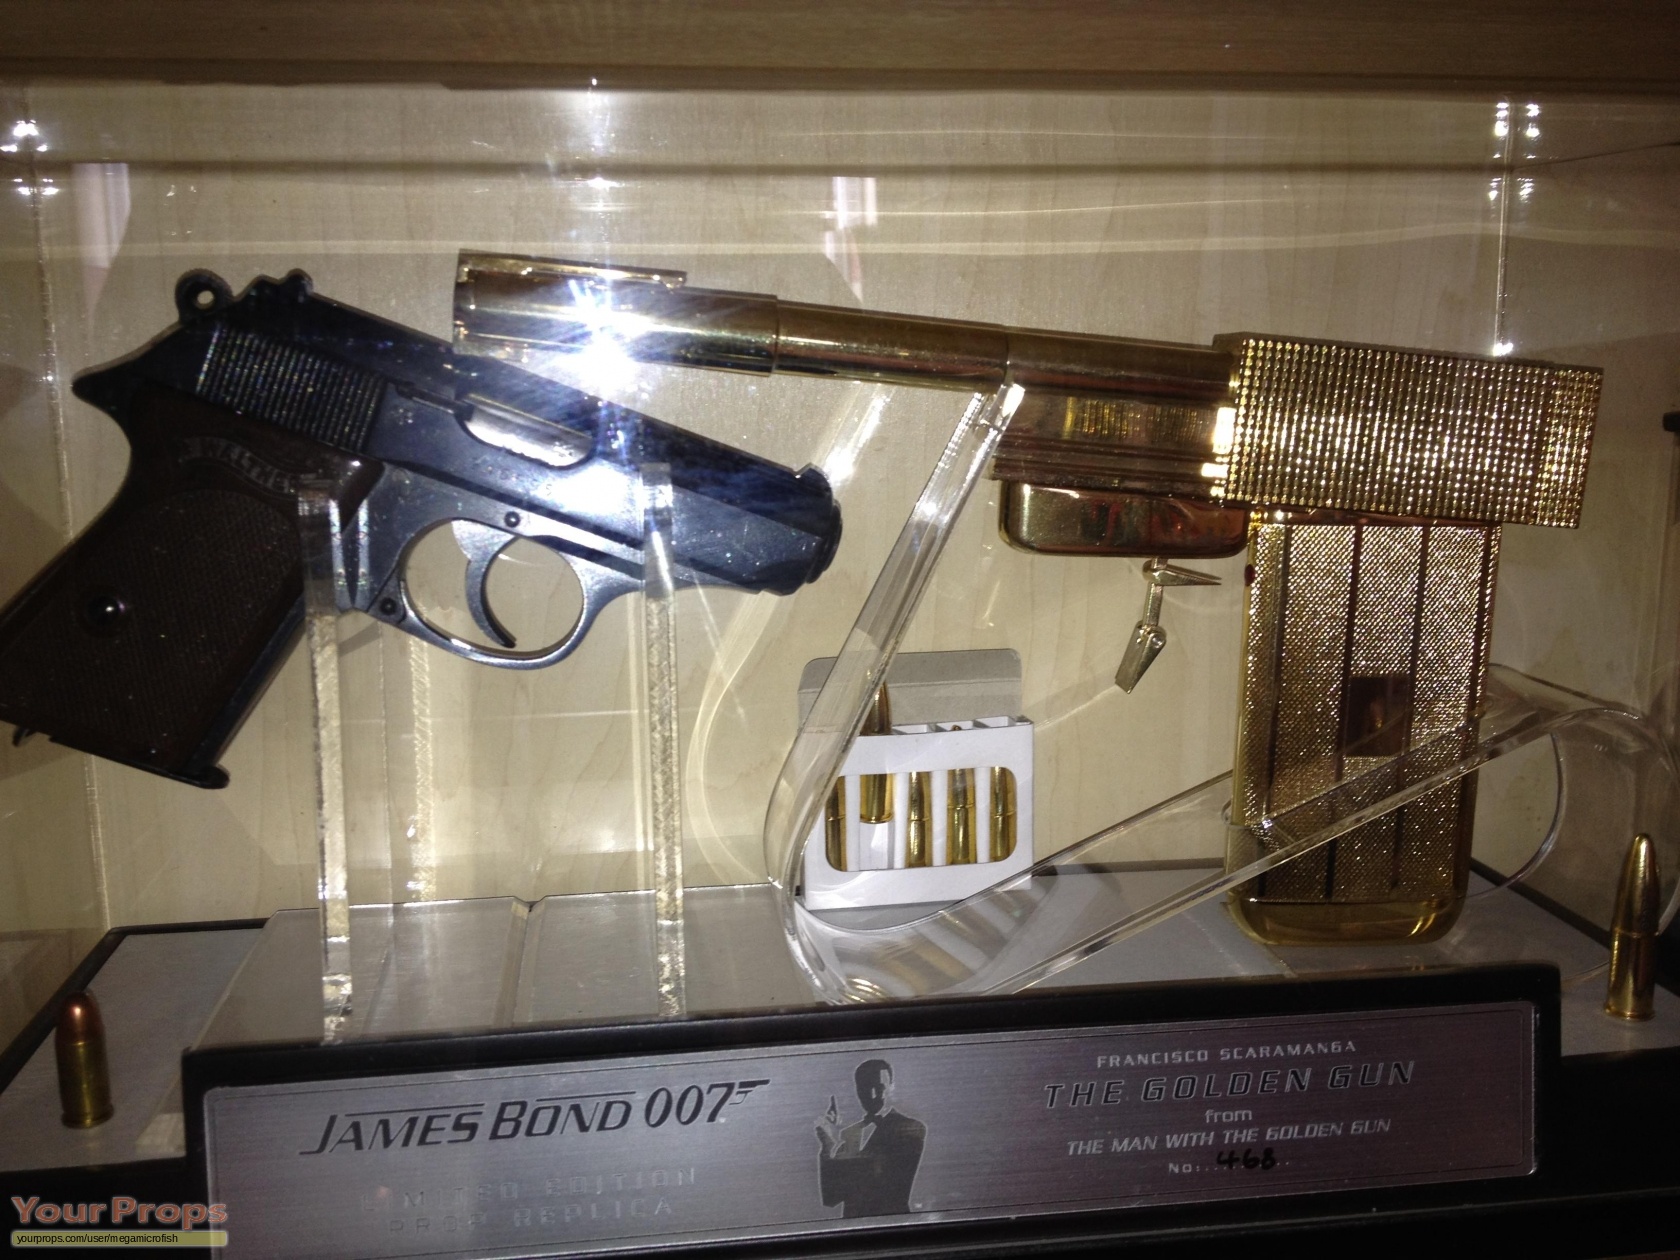 The Man With The Golden Gun Poster Bond James Barrel Gun Brosnan Pierce ...